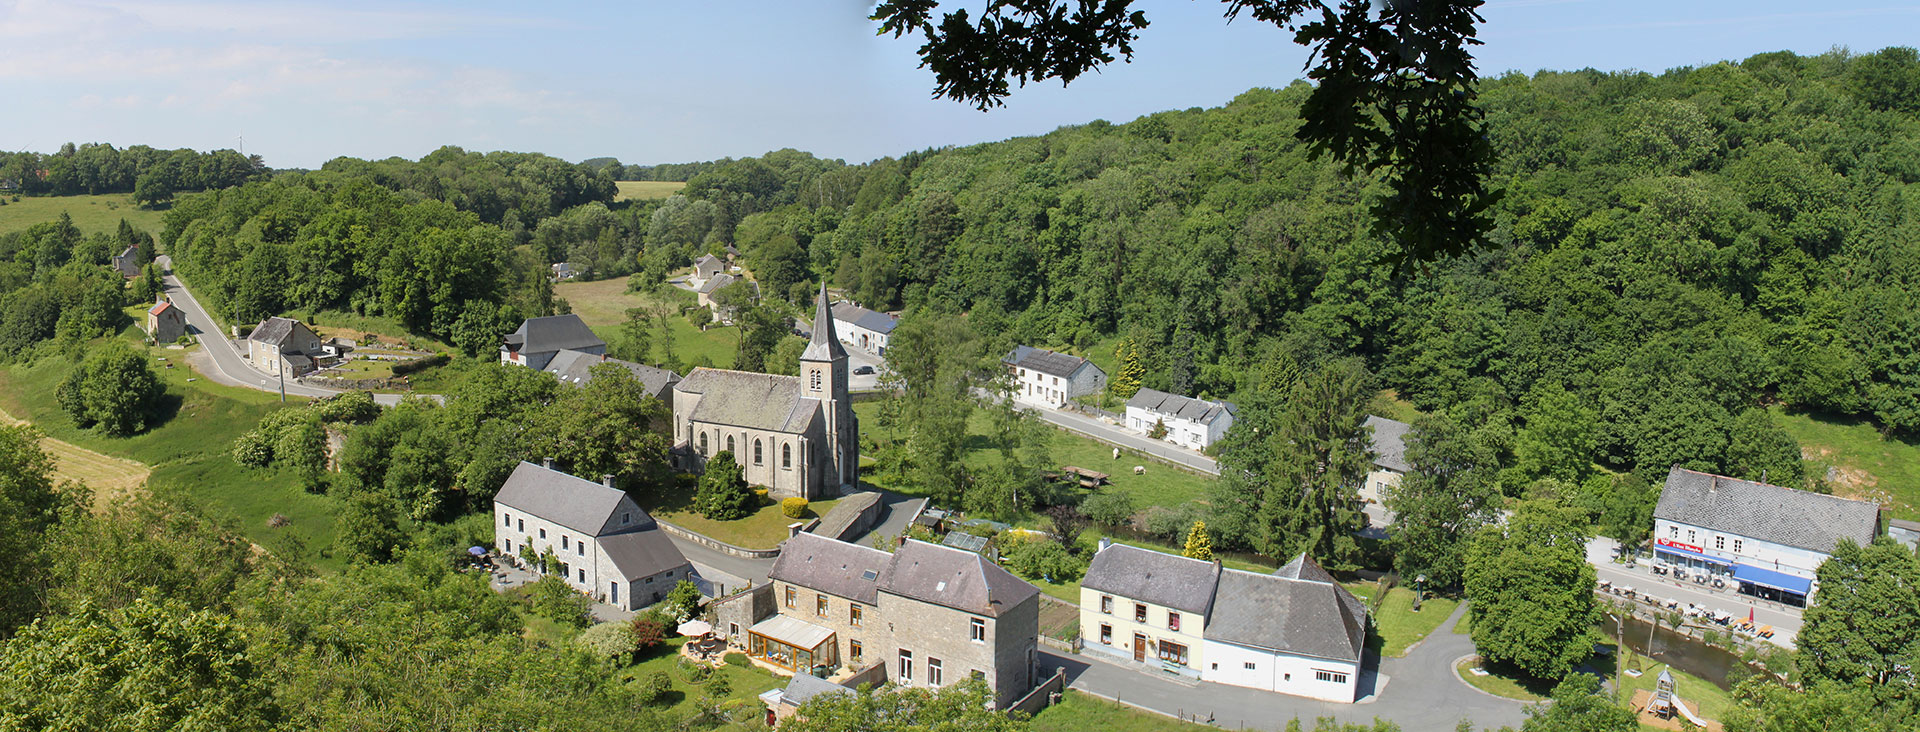 Die schönsten Dörfer der Wallonie - Lompret - Glockenturm - Natur - Blauer Himmel - Landschaft